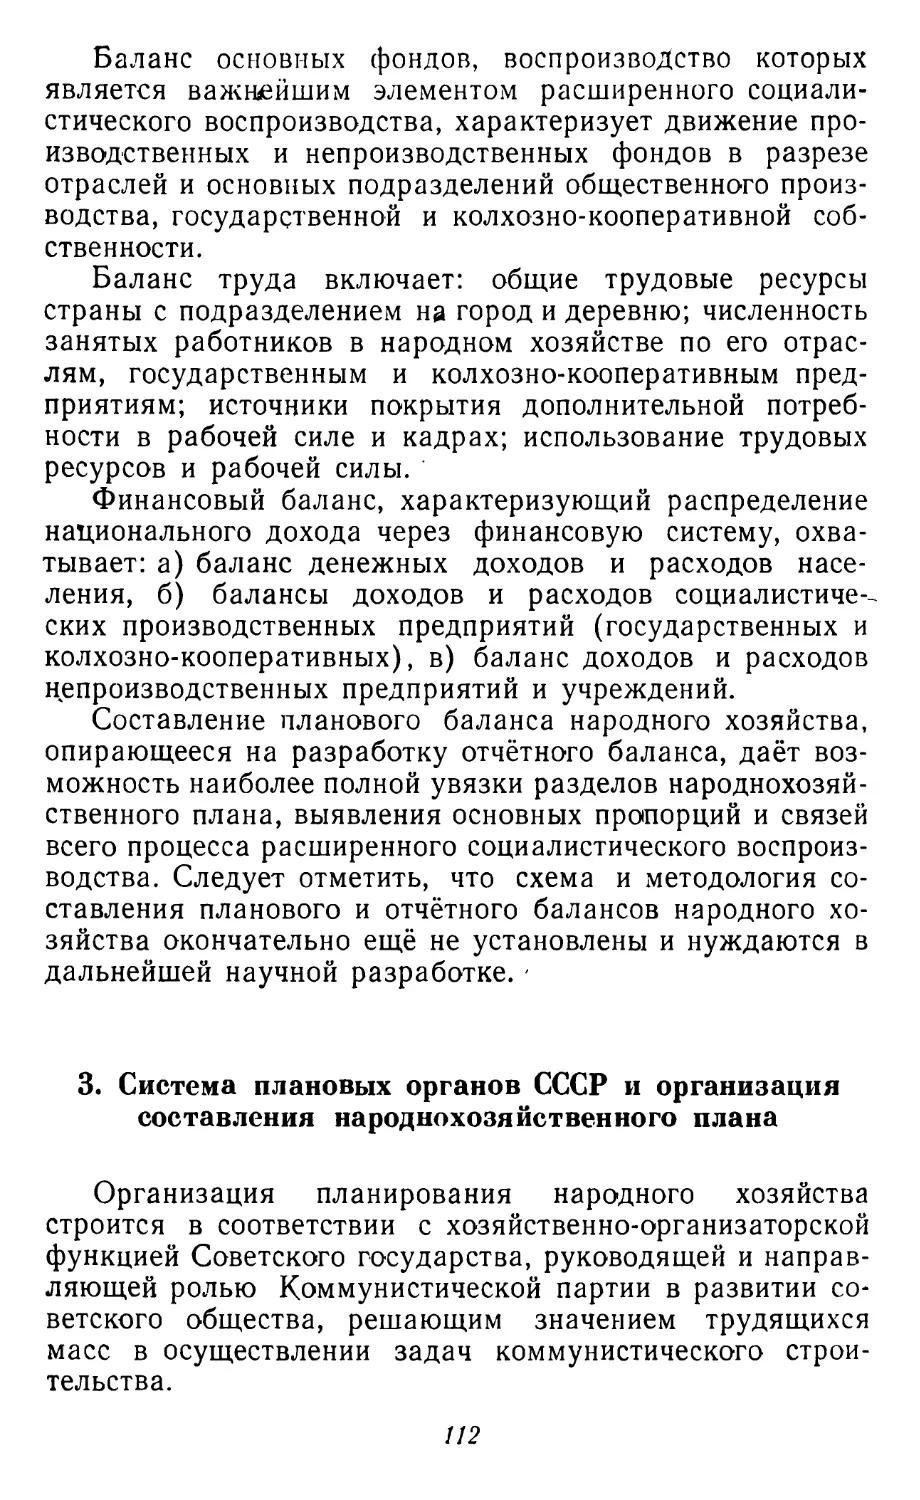 3. Система плановых органов СССР и организация составления народнохозяйственного плана